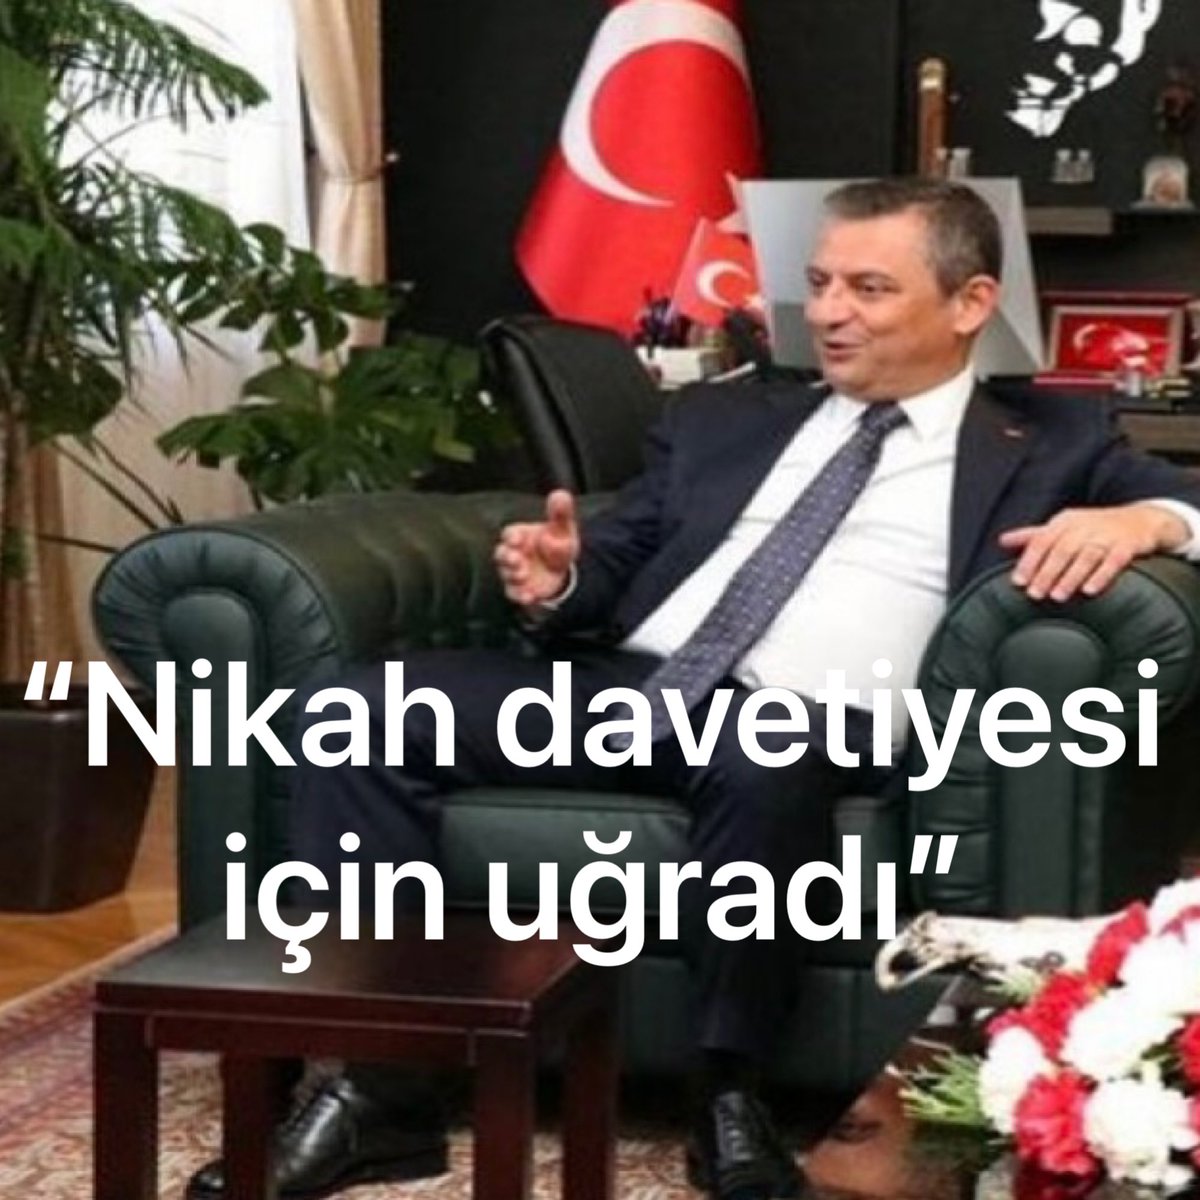 Biz, “Atatürk’ün partisinde Atatürk’e küfreden bir serefsizin ne isi var?” diyoruz “düğün davetiyesi getirdi” diyor Dalga mı geçiyor bizimle?